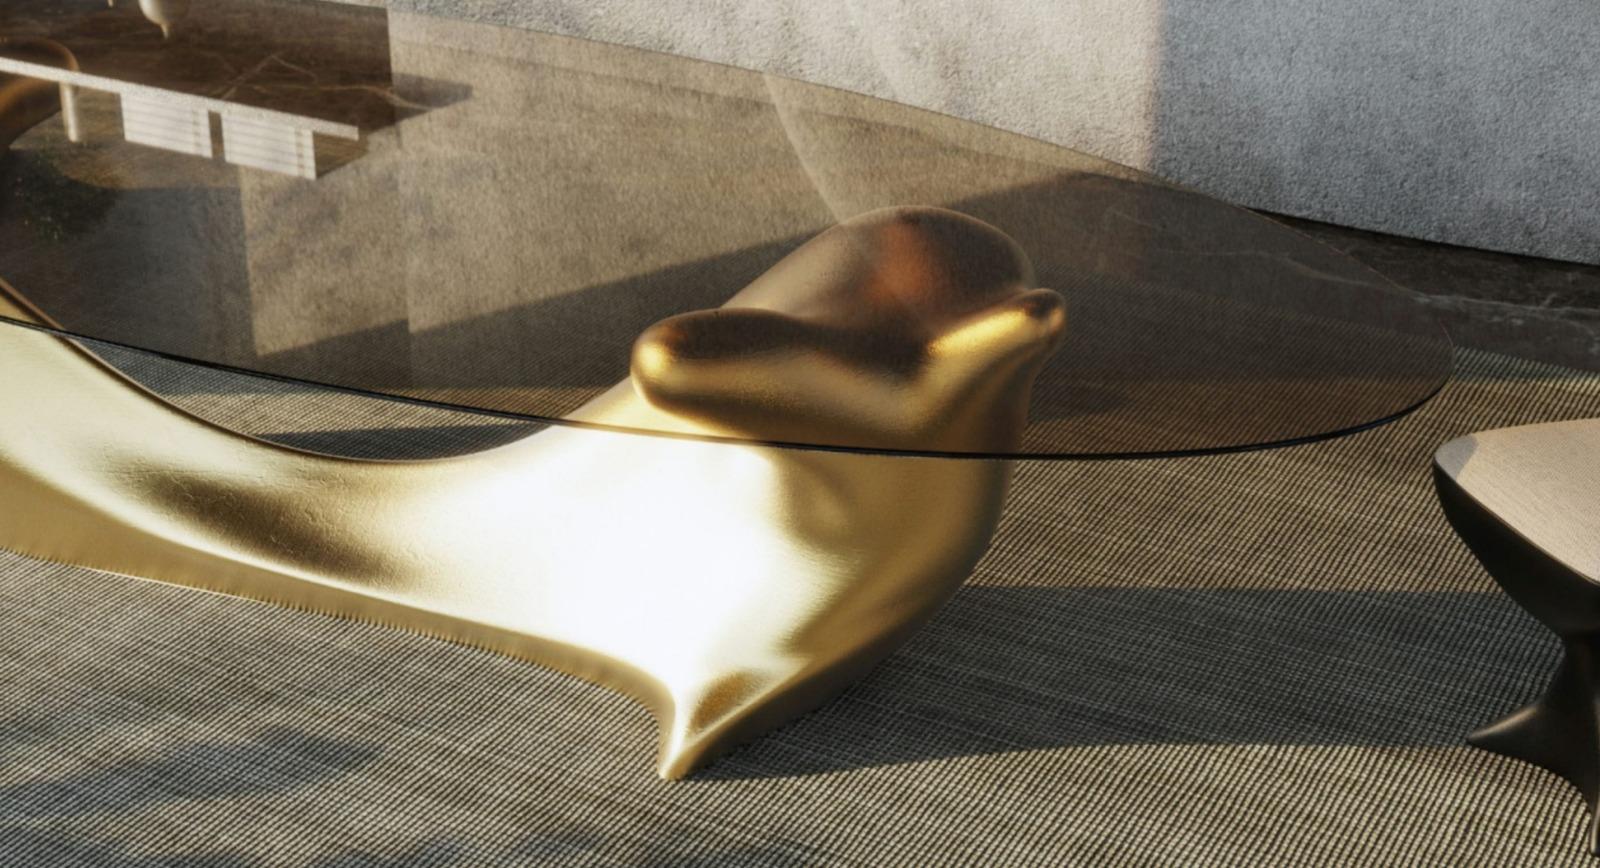 DINING TABLE im neuen Design  Sockel aus Blattgold, Glasplatte aus Bronze

Abmessungen:
350 x 140 x 75 cm
137.8 x 55.1 x 29.5 in
Sitze:
10 bis 12

Ein wahres Schmuckstück, das Grandeur und Eleganz verkörpert. Mit seiner großen, bronzefarbenen